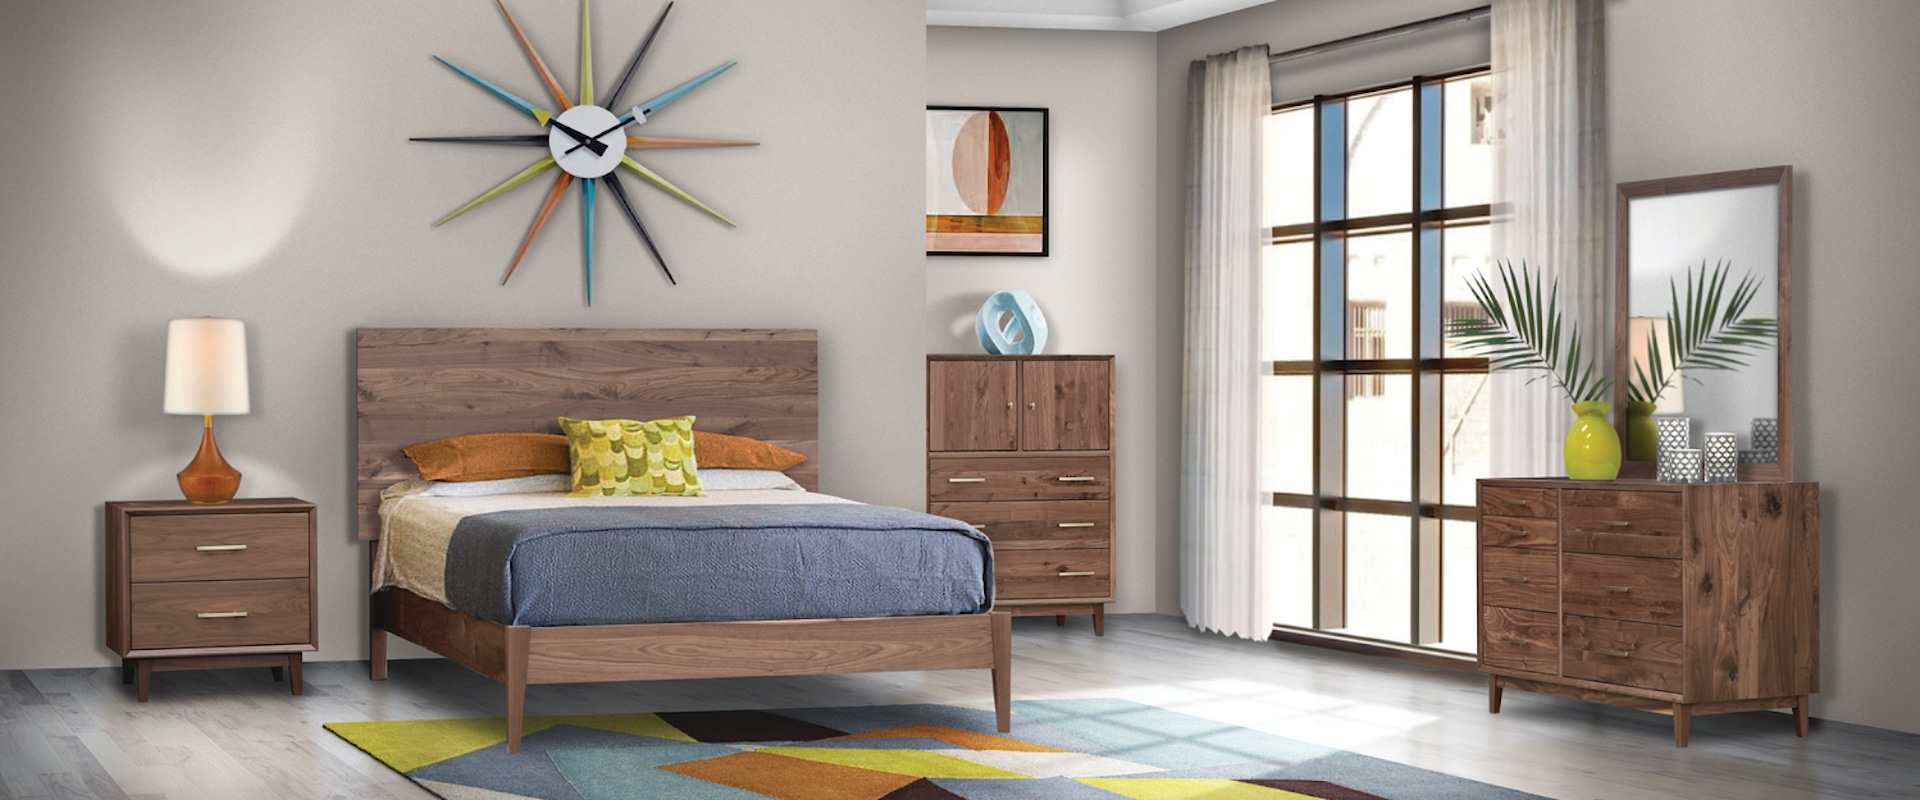 Customizable Solid Wood Queen Bedroom Group